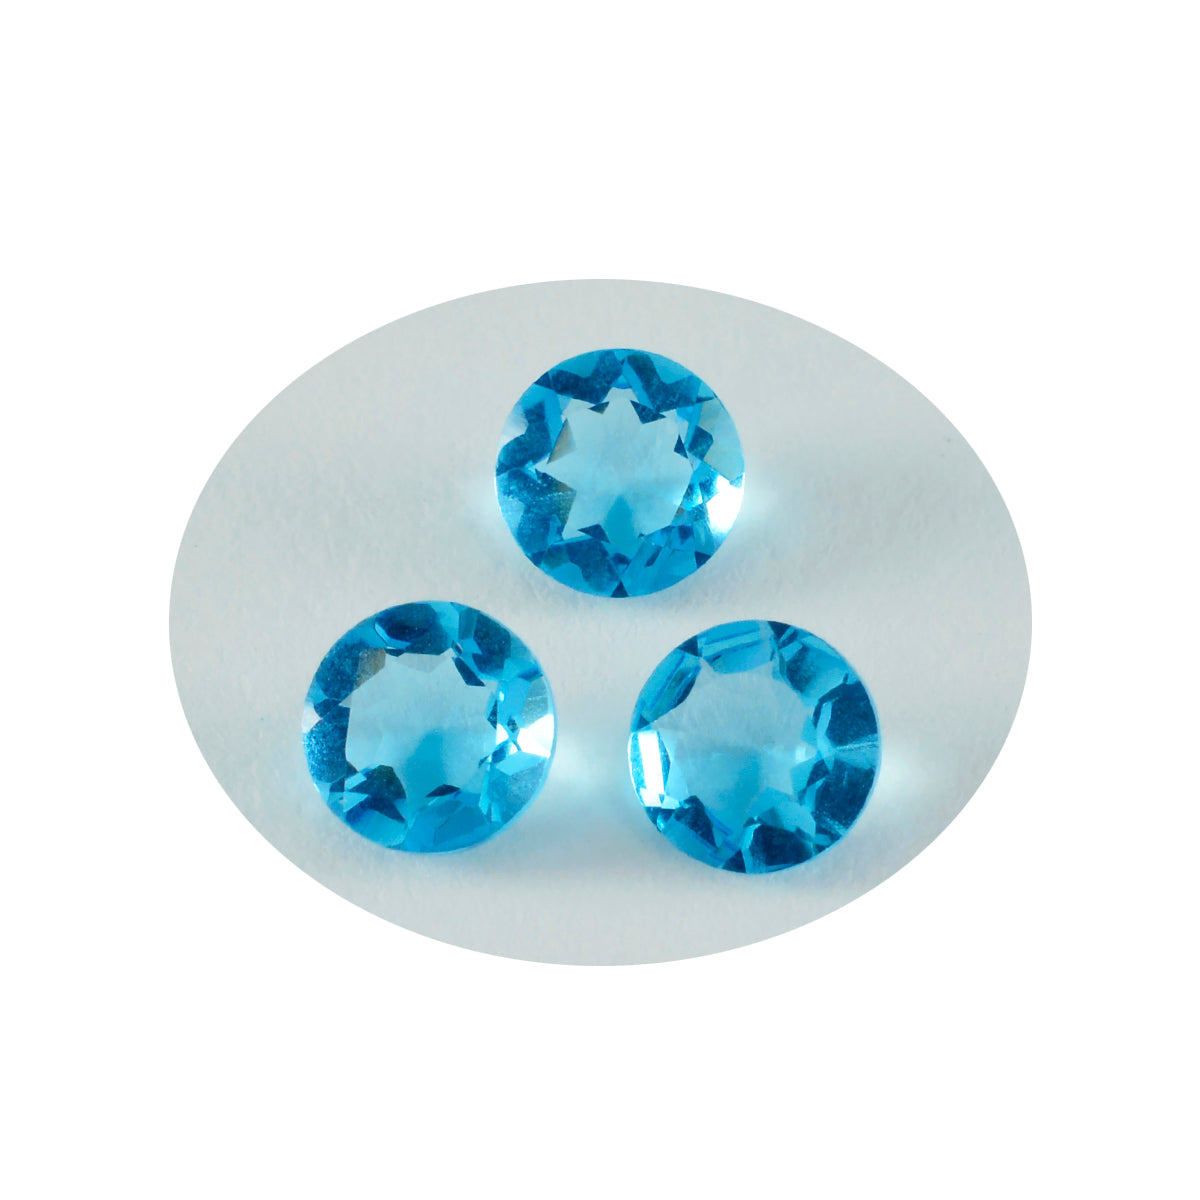 Riyogems 1 pieza de topacio azul CZ facetado 10x10 mm forma redonda gemas de calidad AA